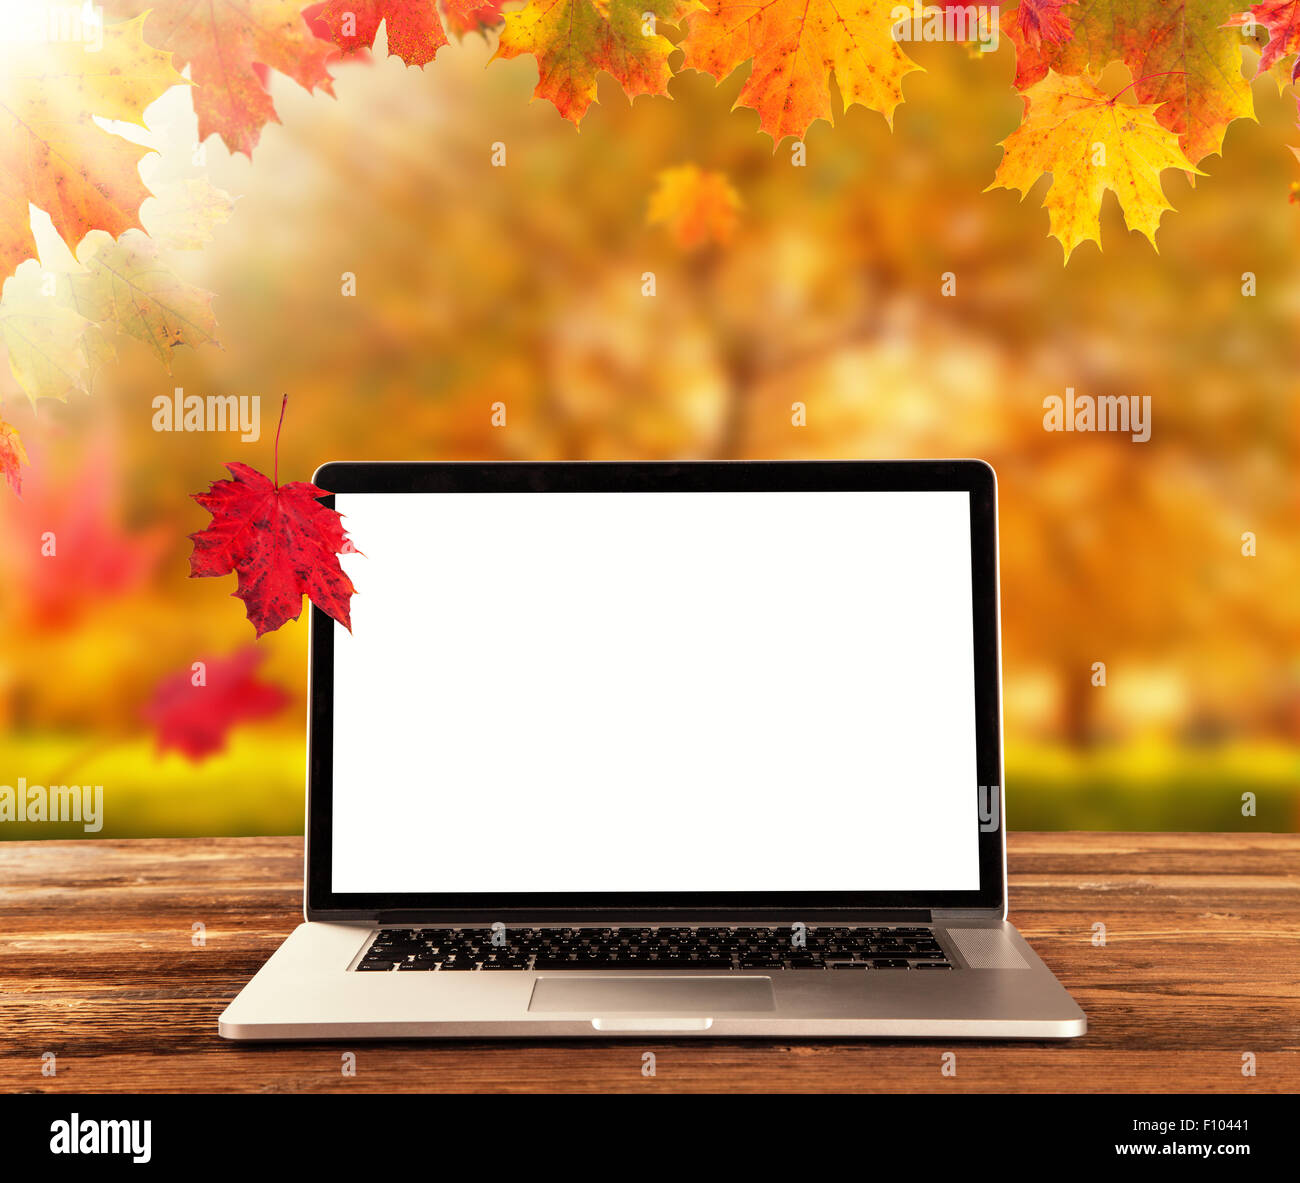 Laptop on wooden table in autumn season Stock Photo